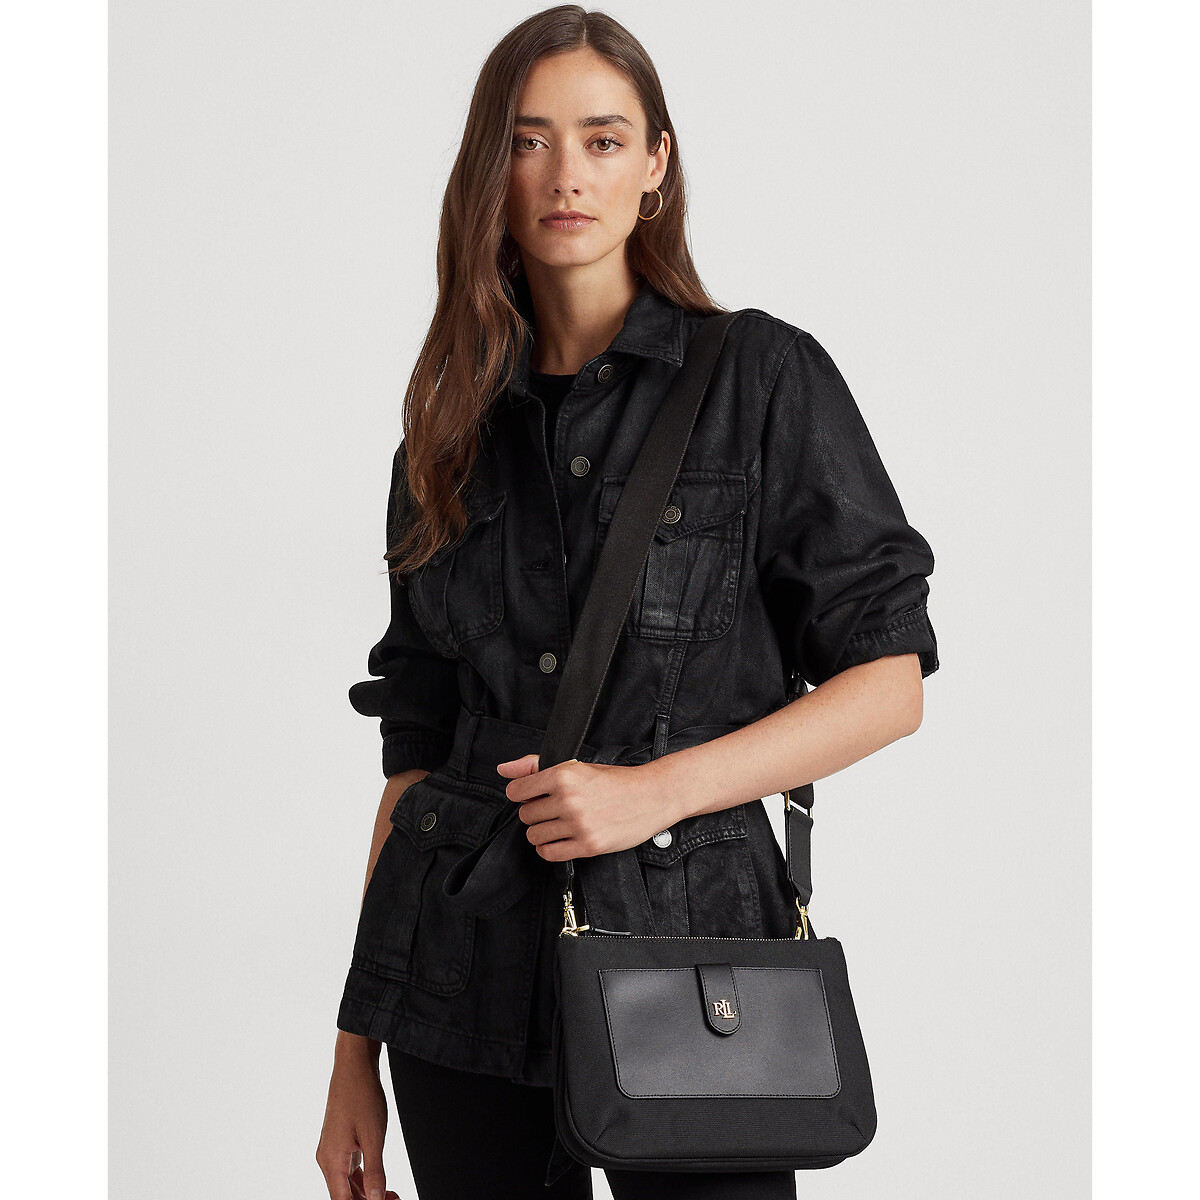 Jamey oxford crossbody bag, medium , black, Lauren Ralph Lauren | La Redoute